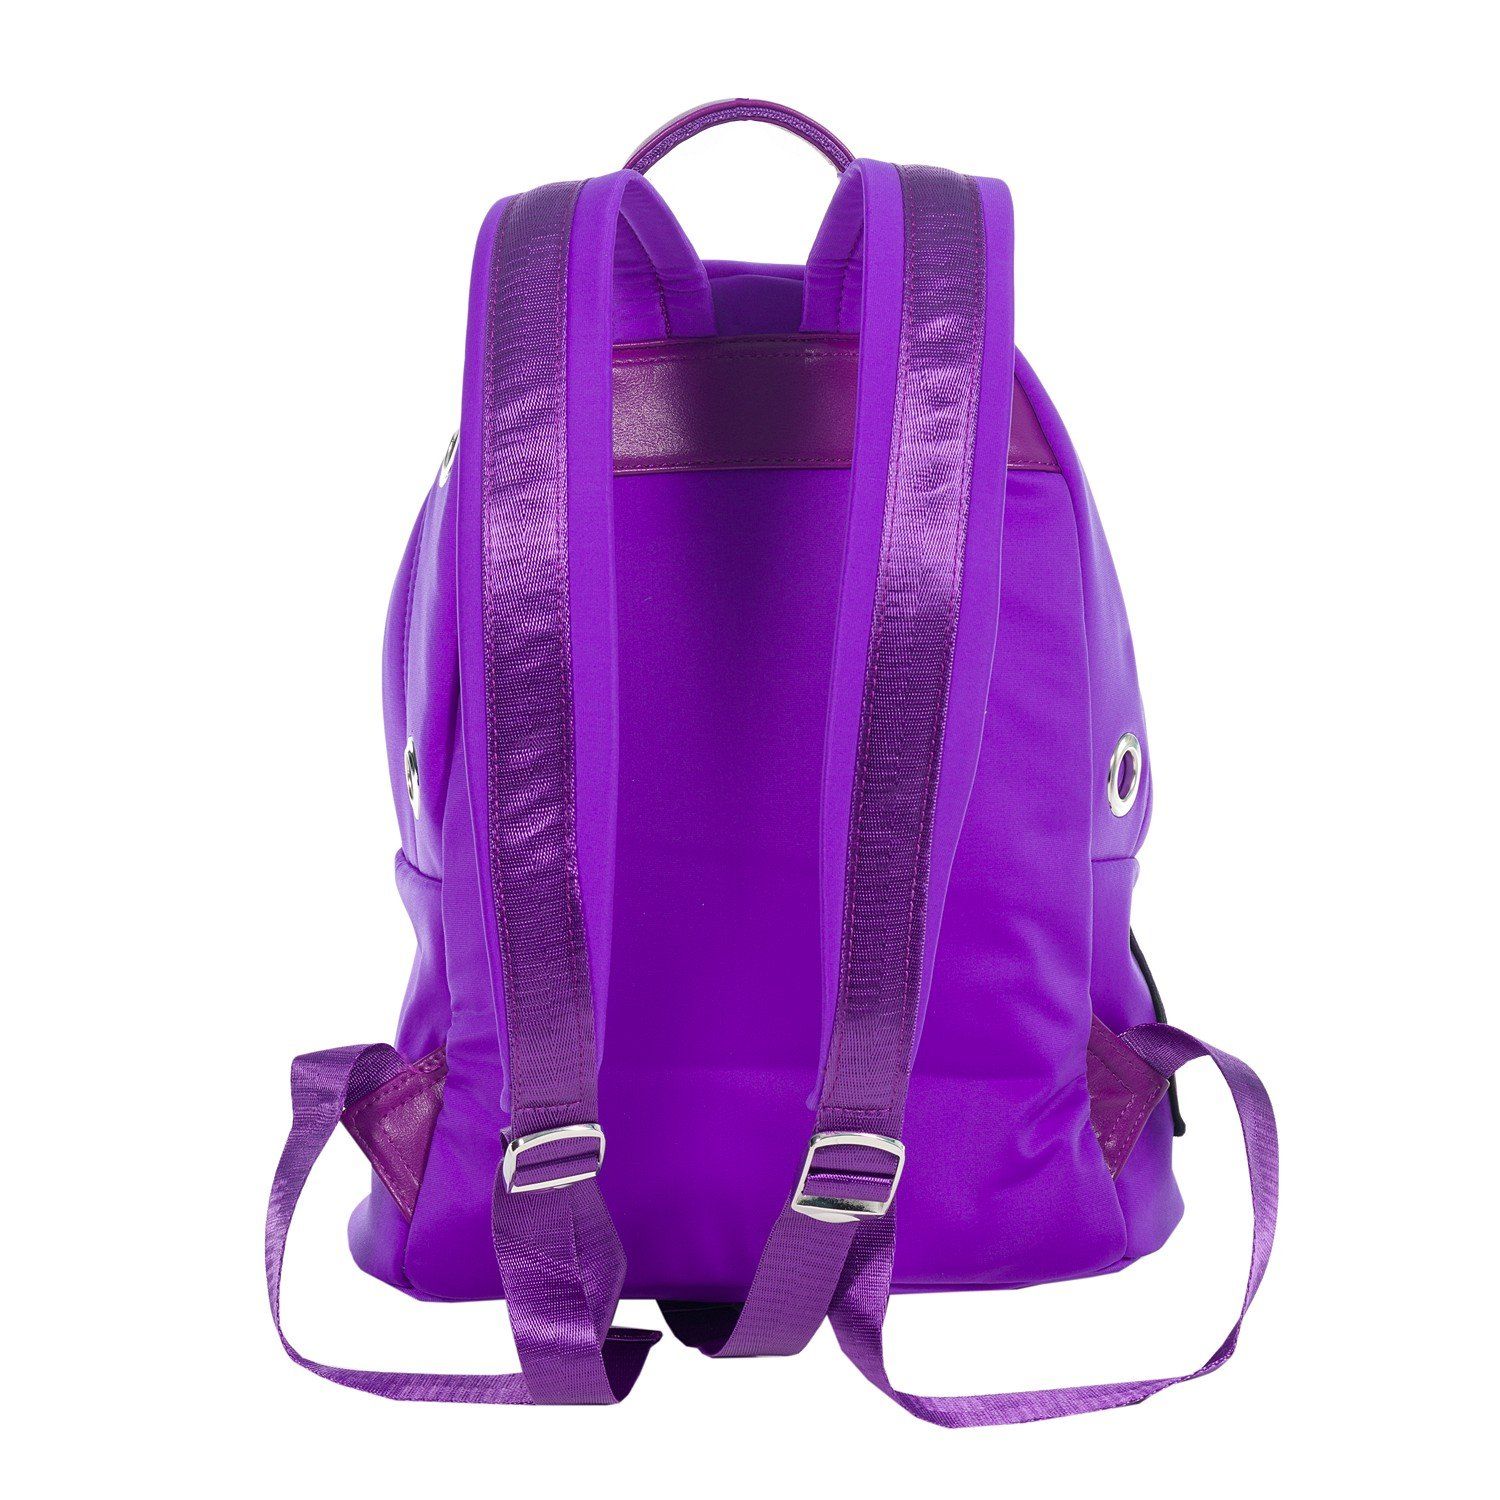 Рюкзак женский городской, фиолетовый, с широкими лямками, объем 19 л